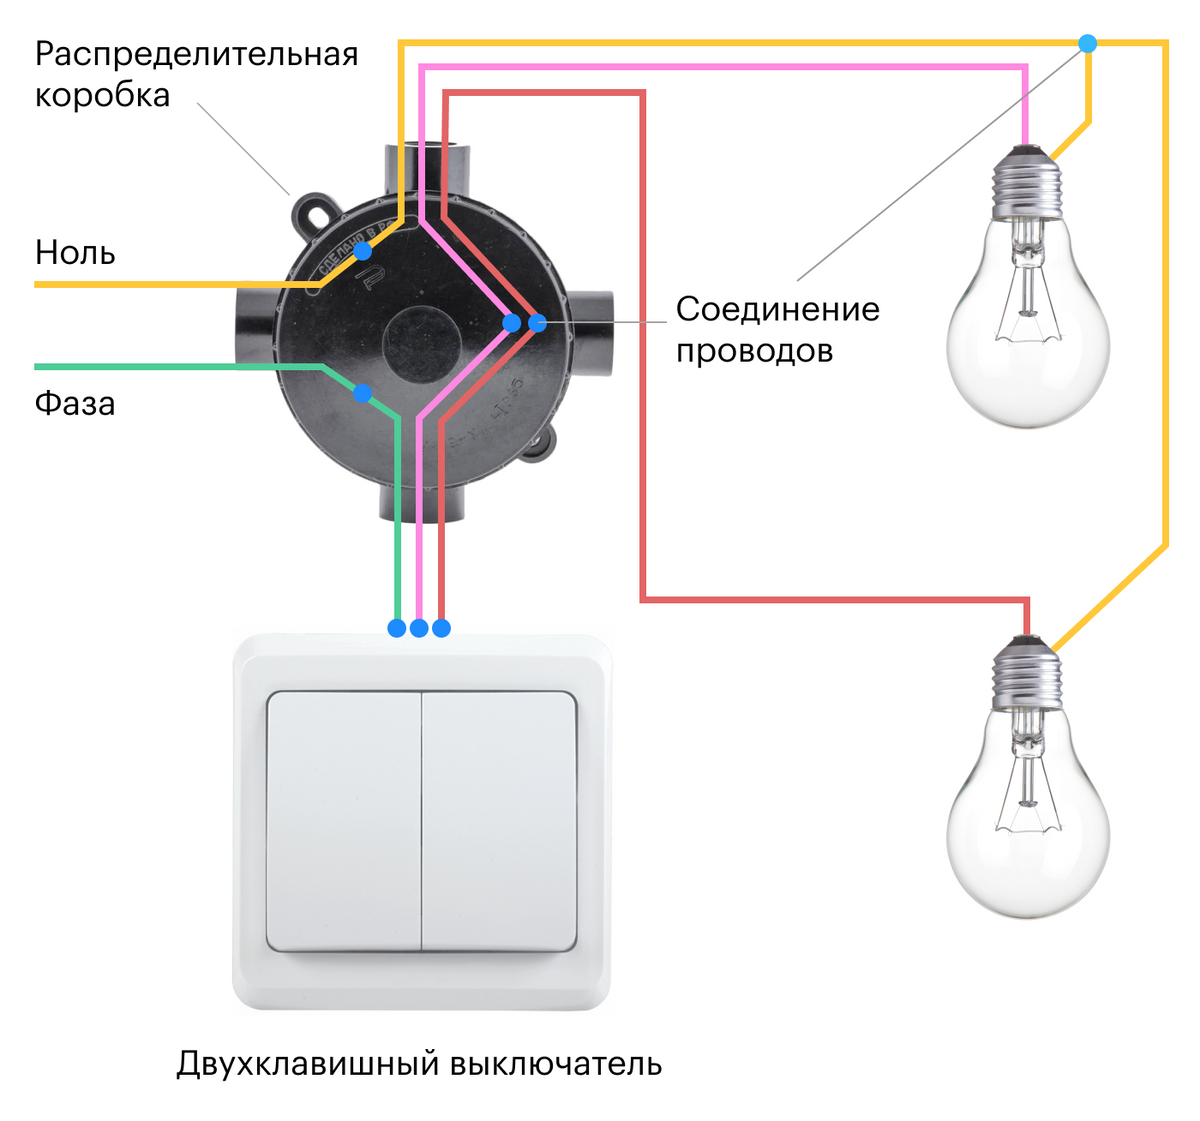 Соединение розетка выключатель. Соединение одинарного выключателя схема подключения. Схема подключения выключателя на две лампочки. Схема подключения распределительная коробка выключатель светильник. Схема подключения лампочки и выключателя к распред коробке.